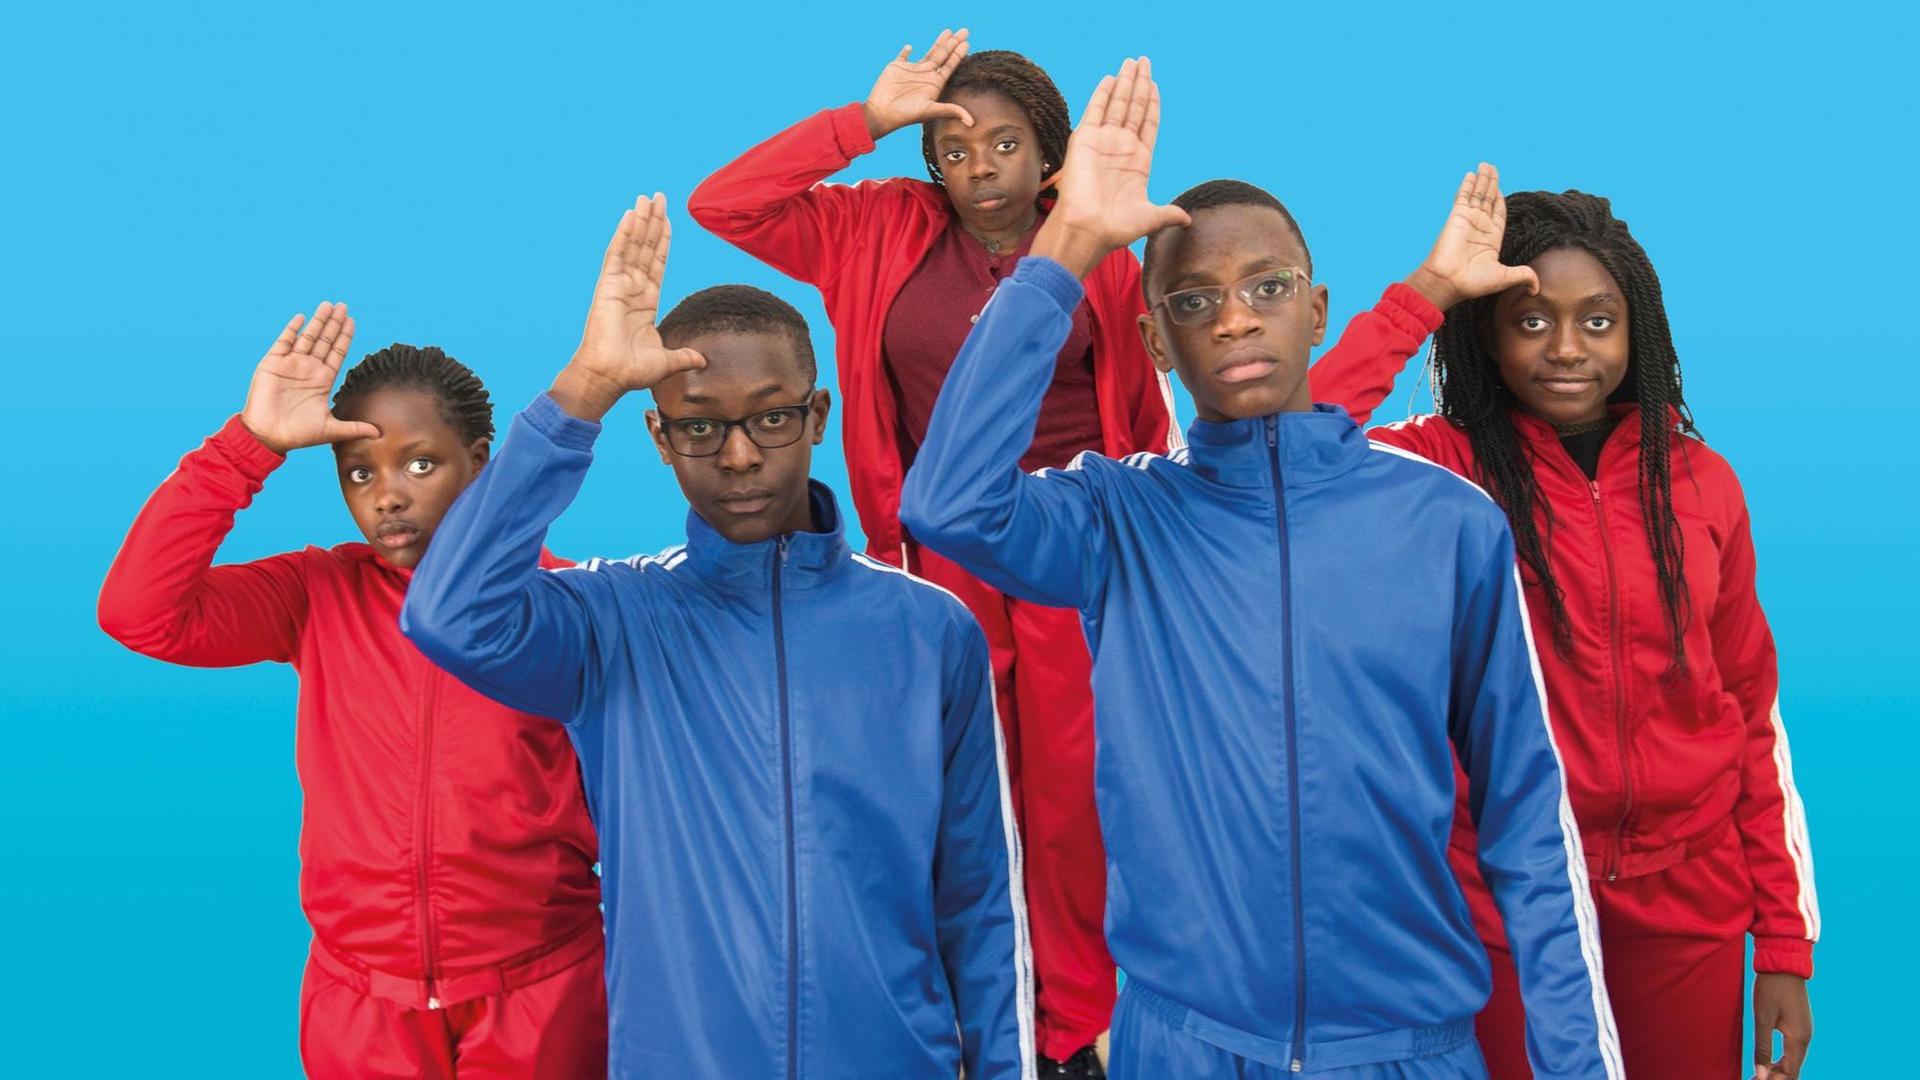 Fünf dunkelhäutige Kinder in roten und blauen Trainingsanzügen stehen in einer Gruppe zusammen und machen den DDR-Pioniergruß mit einer Hand an der Stirn.